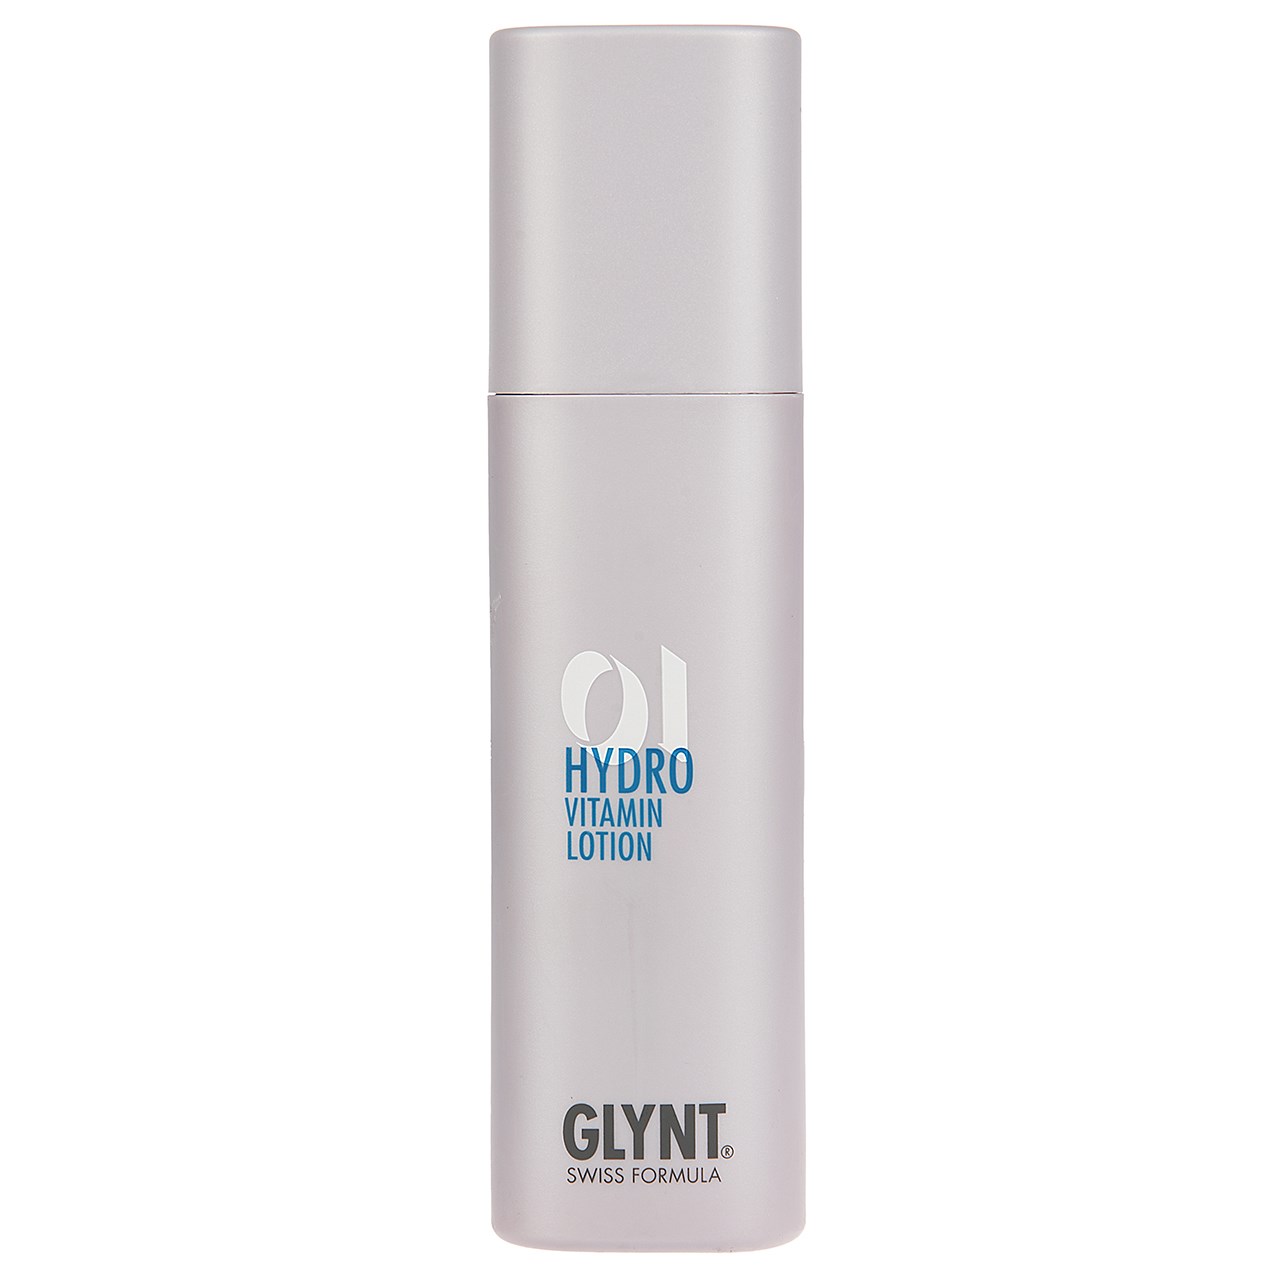 لوسیون نرم کننده و براق کننده گلینت مدل Hydro Vitamin 01 حجم 200 میلی لیتر